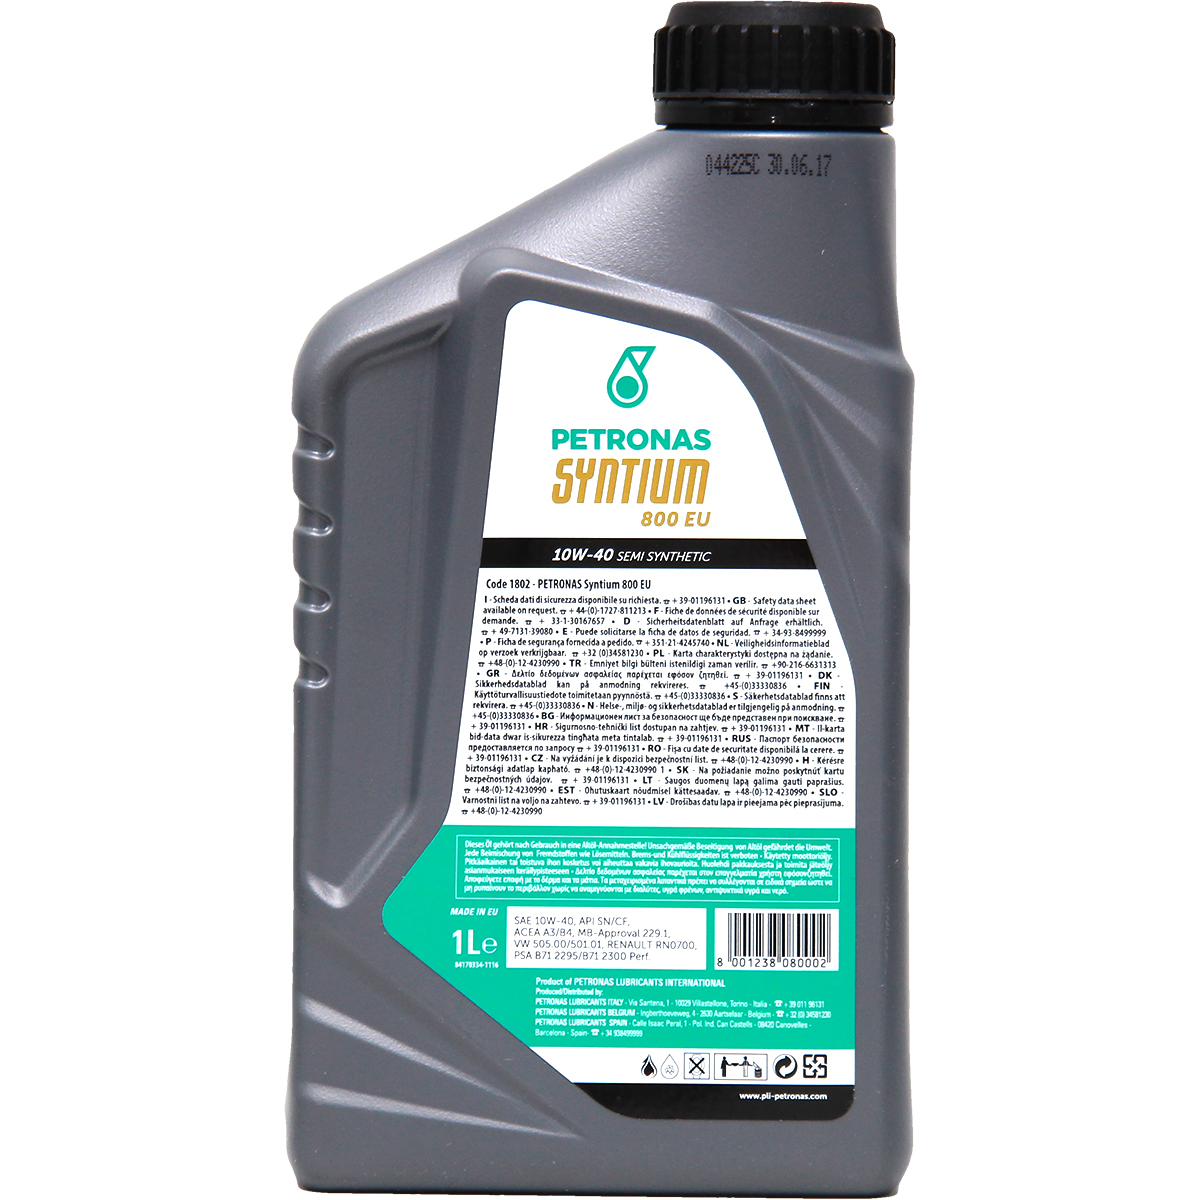 Petronas Syntium 800 EU 10W-40 1 Liter